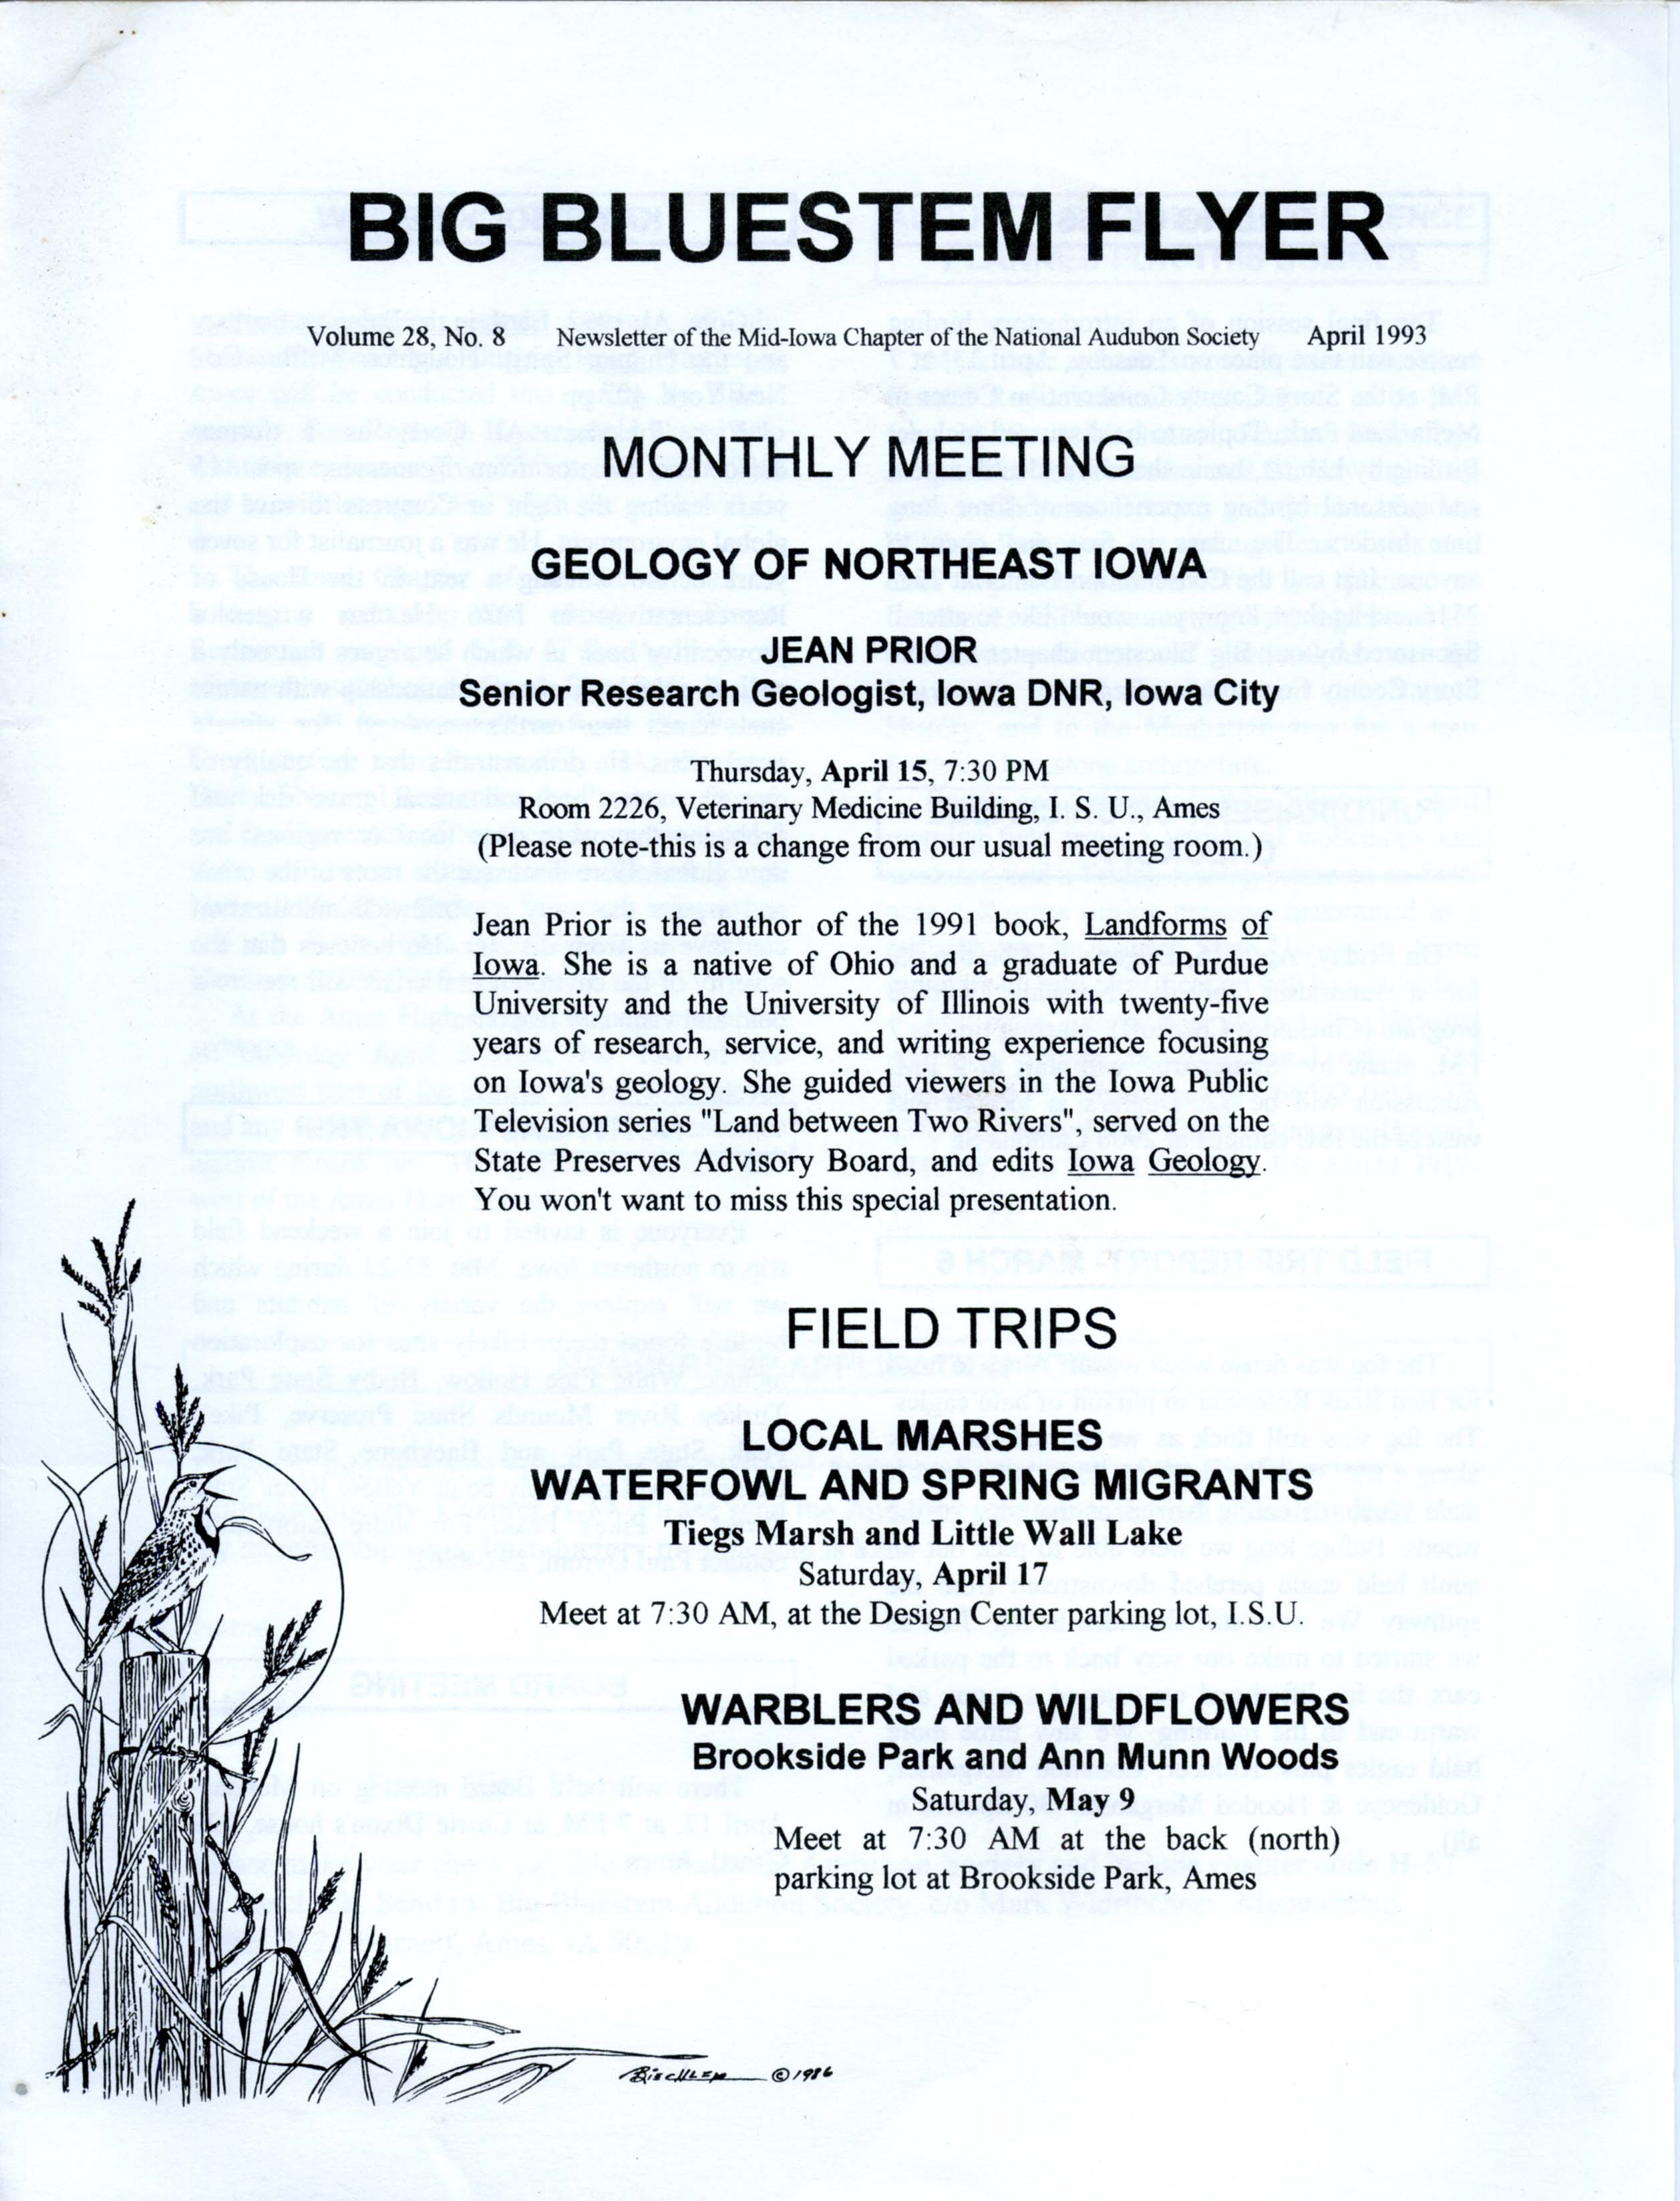 Big Bluestem Flyer, Volume 28, Number 8, April 1993